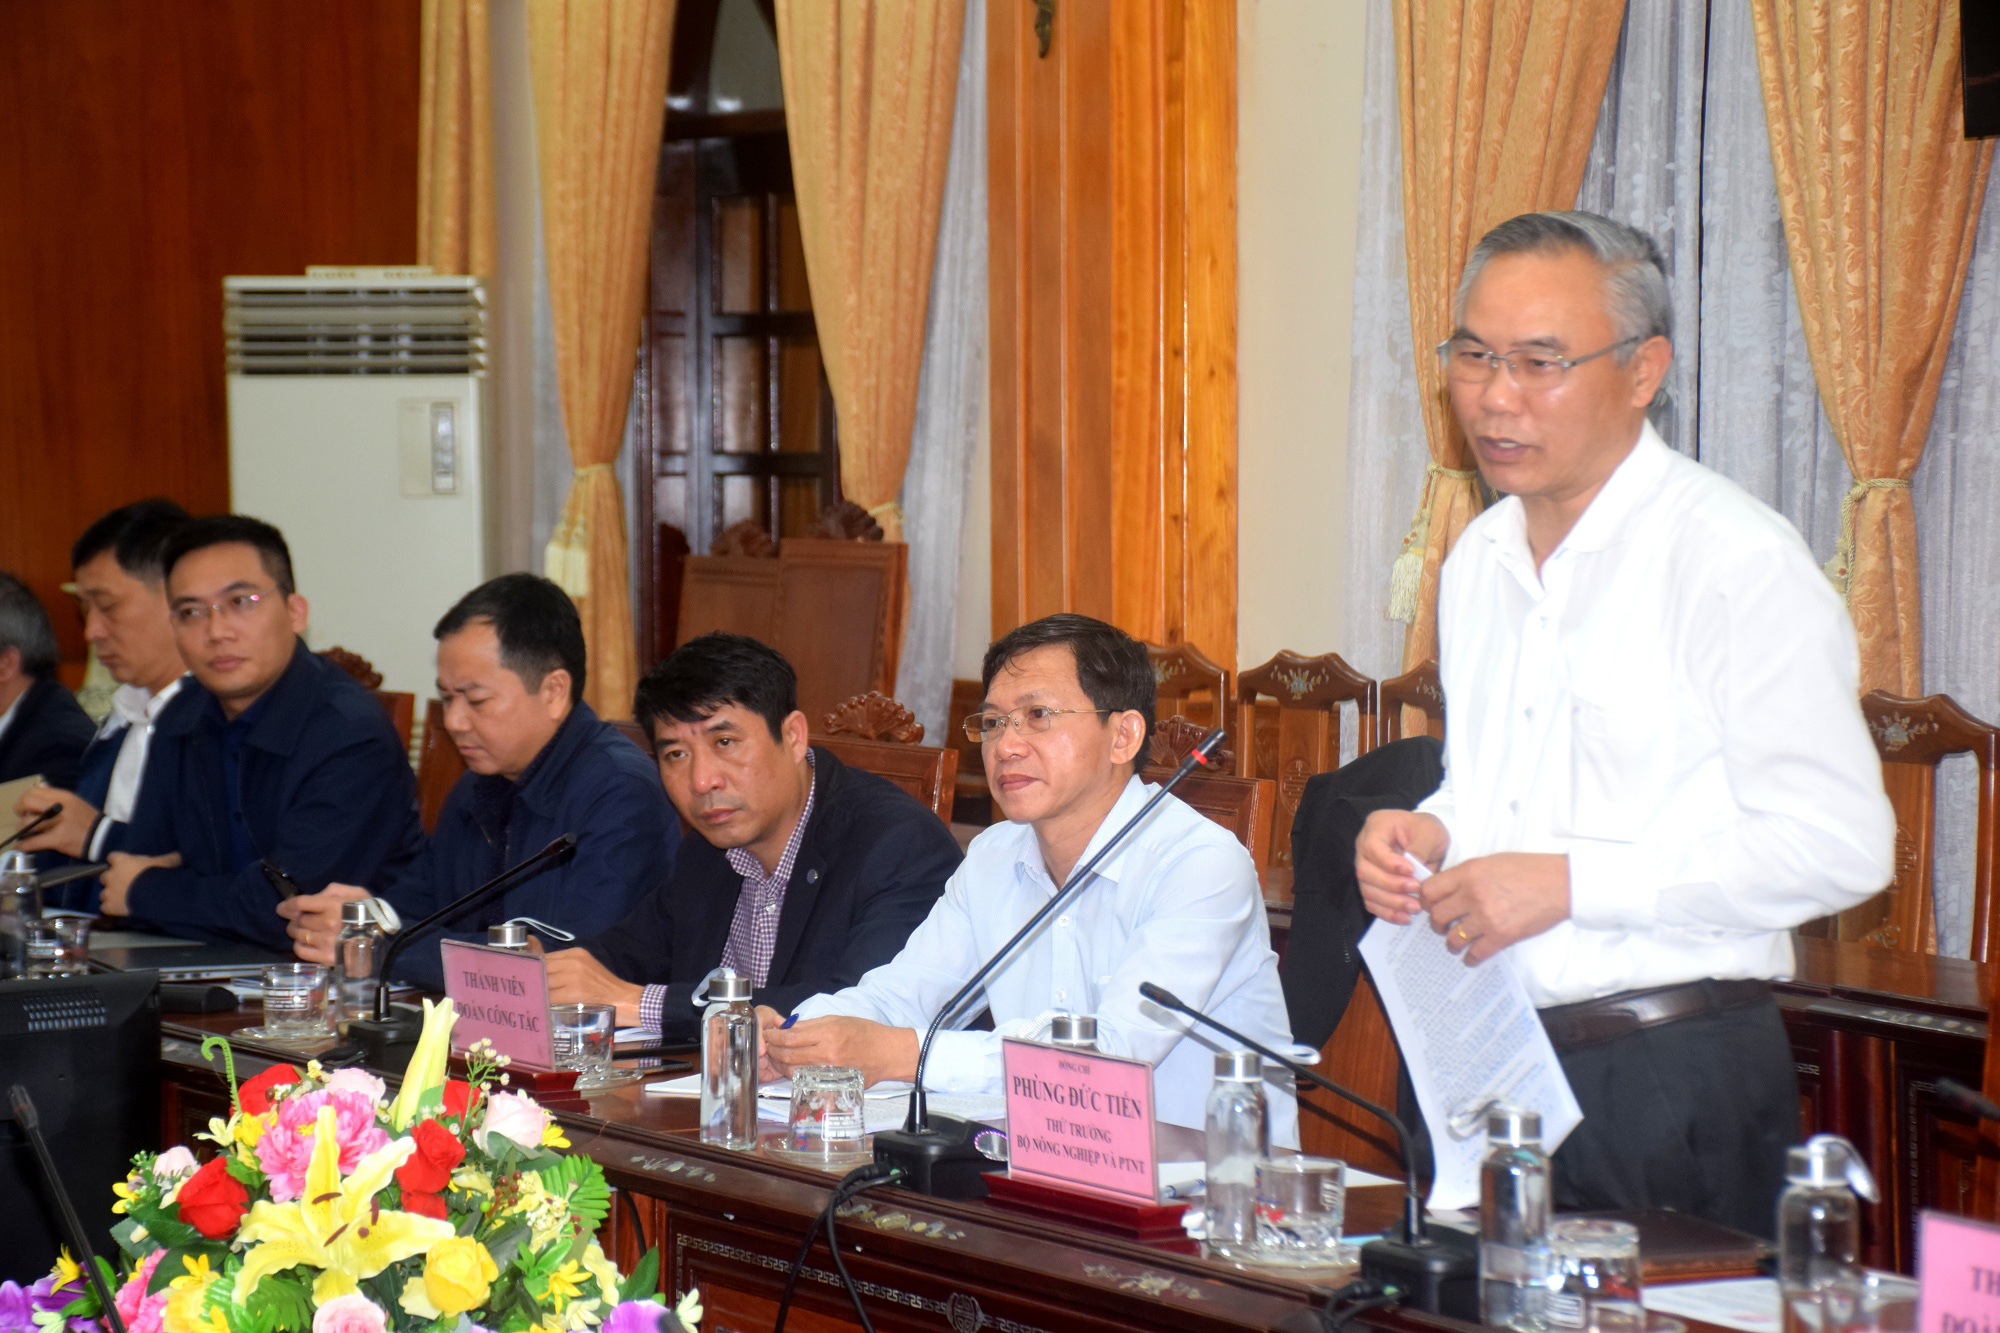 Bộ NNPTNT đánh giá cao công tác khắc phục hậu quả bão lũ của tỉnh Bình Định - Ảnh 1.